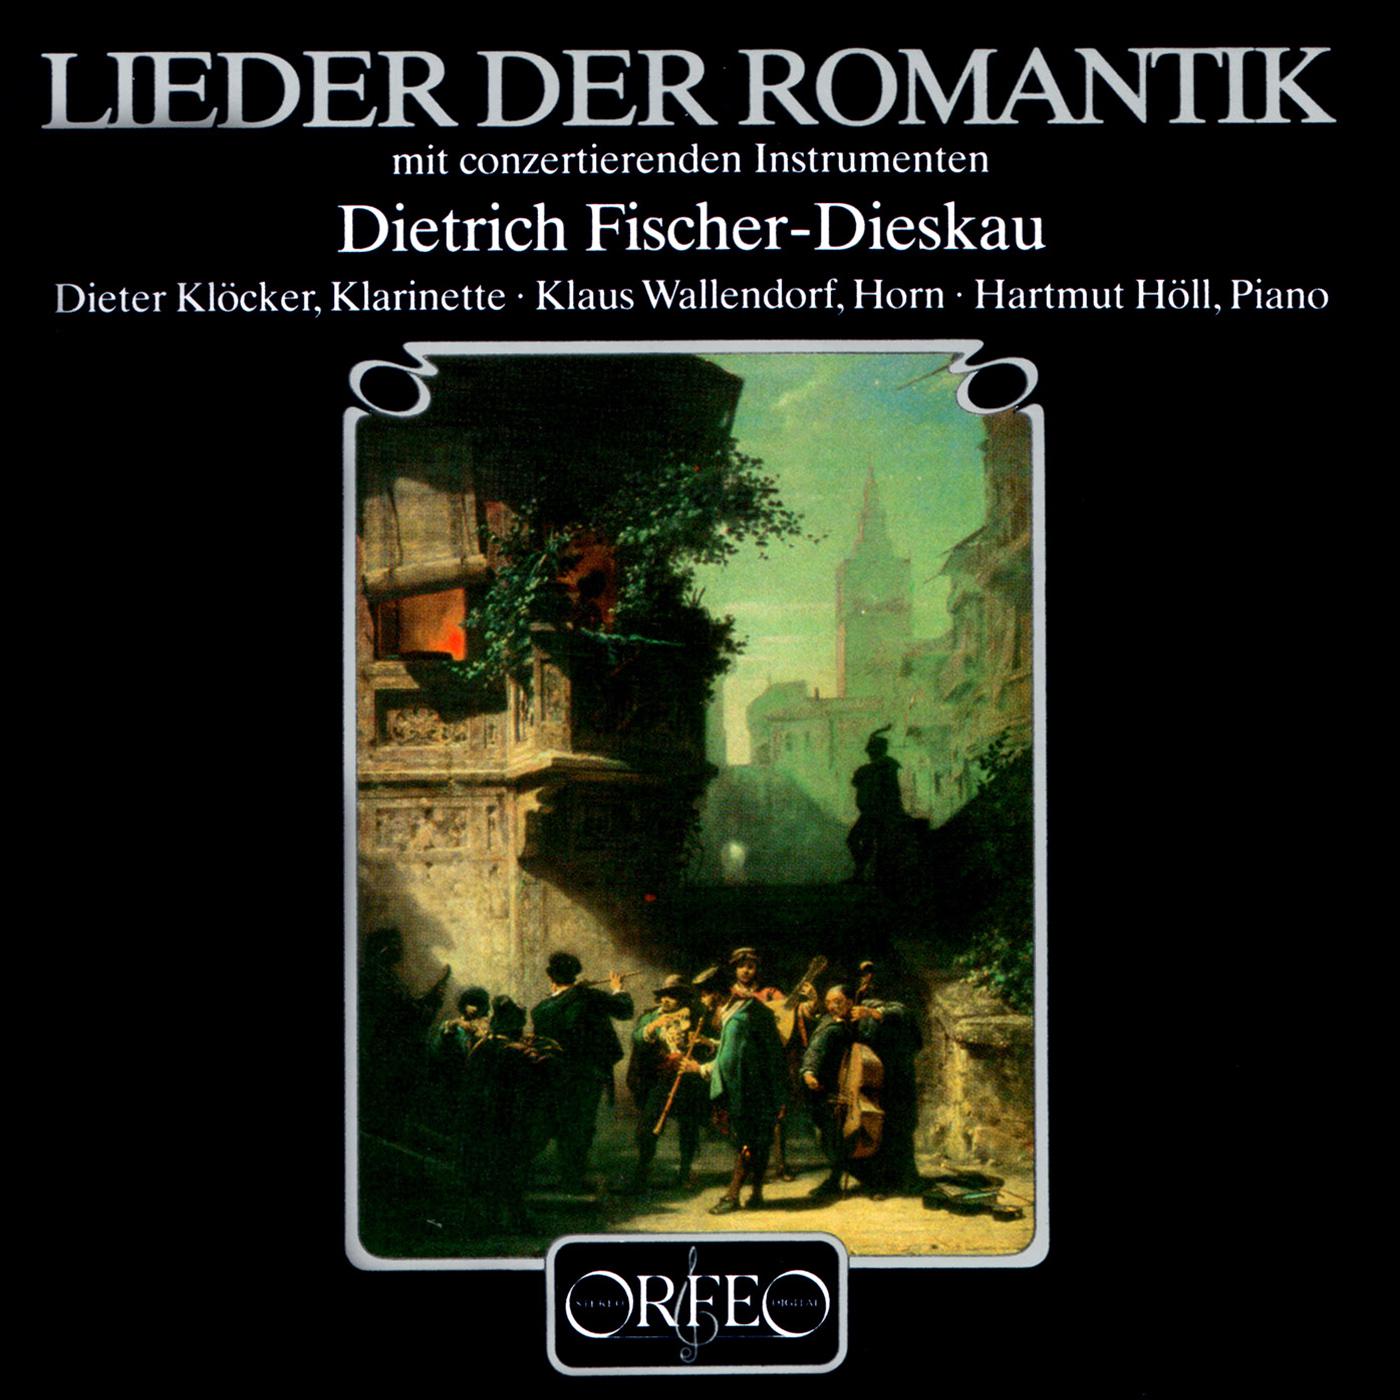 Vocal Recital: Fischer-Dieskau, Dietrich - NEUKOMM, S.R. von / KREUTZER, C. / DONIZETTI, G. / REISSIGER, C.G. (Lieder der Romantik)